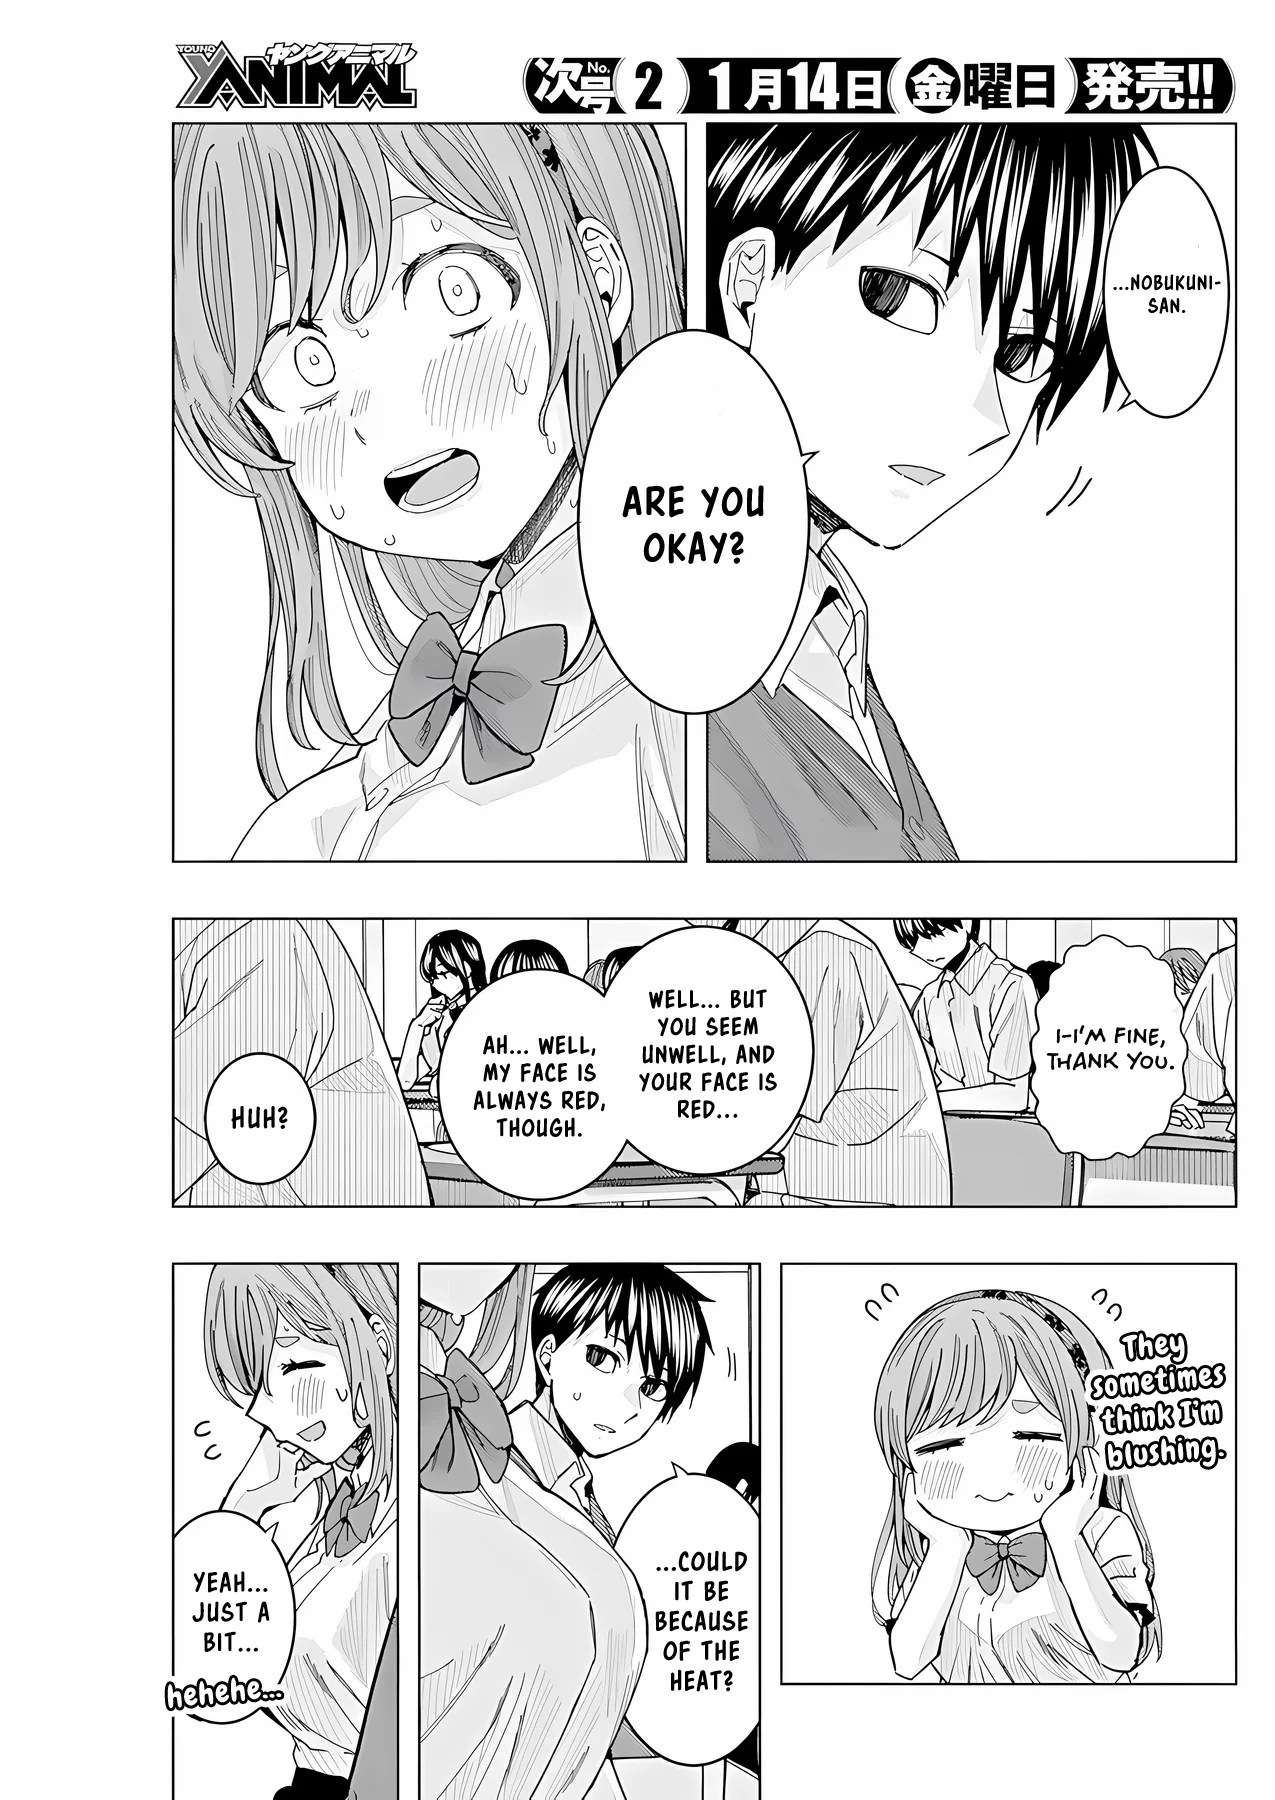 "nobukuni-San" Does She Like Me? - chapter 26 - #6